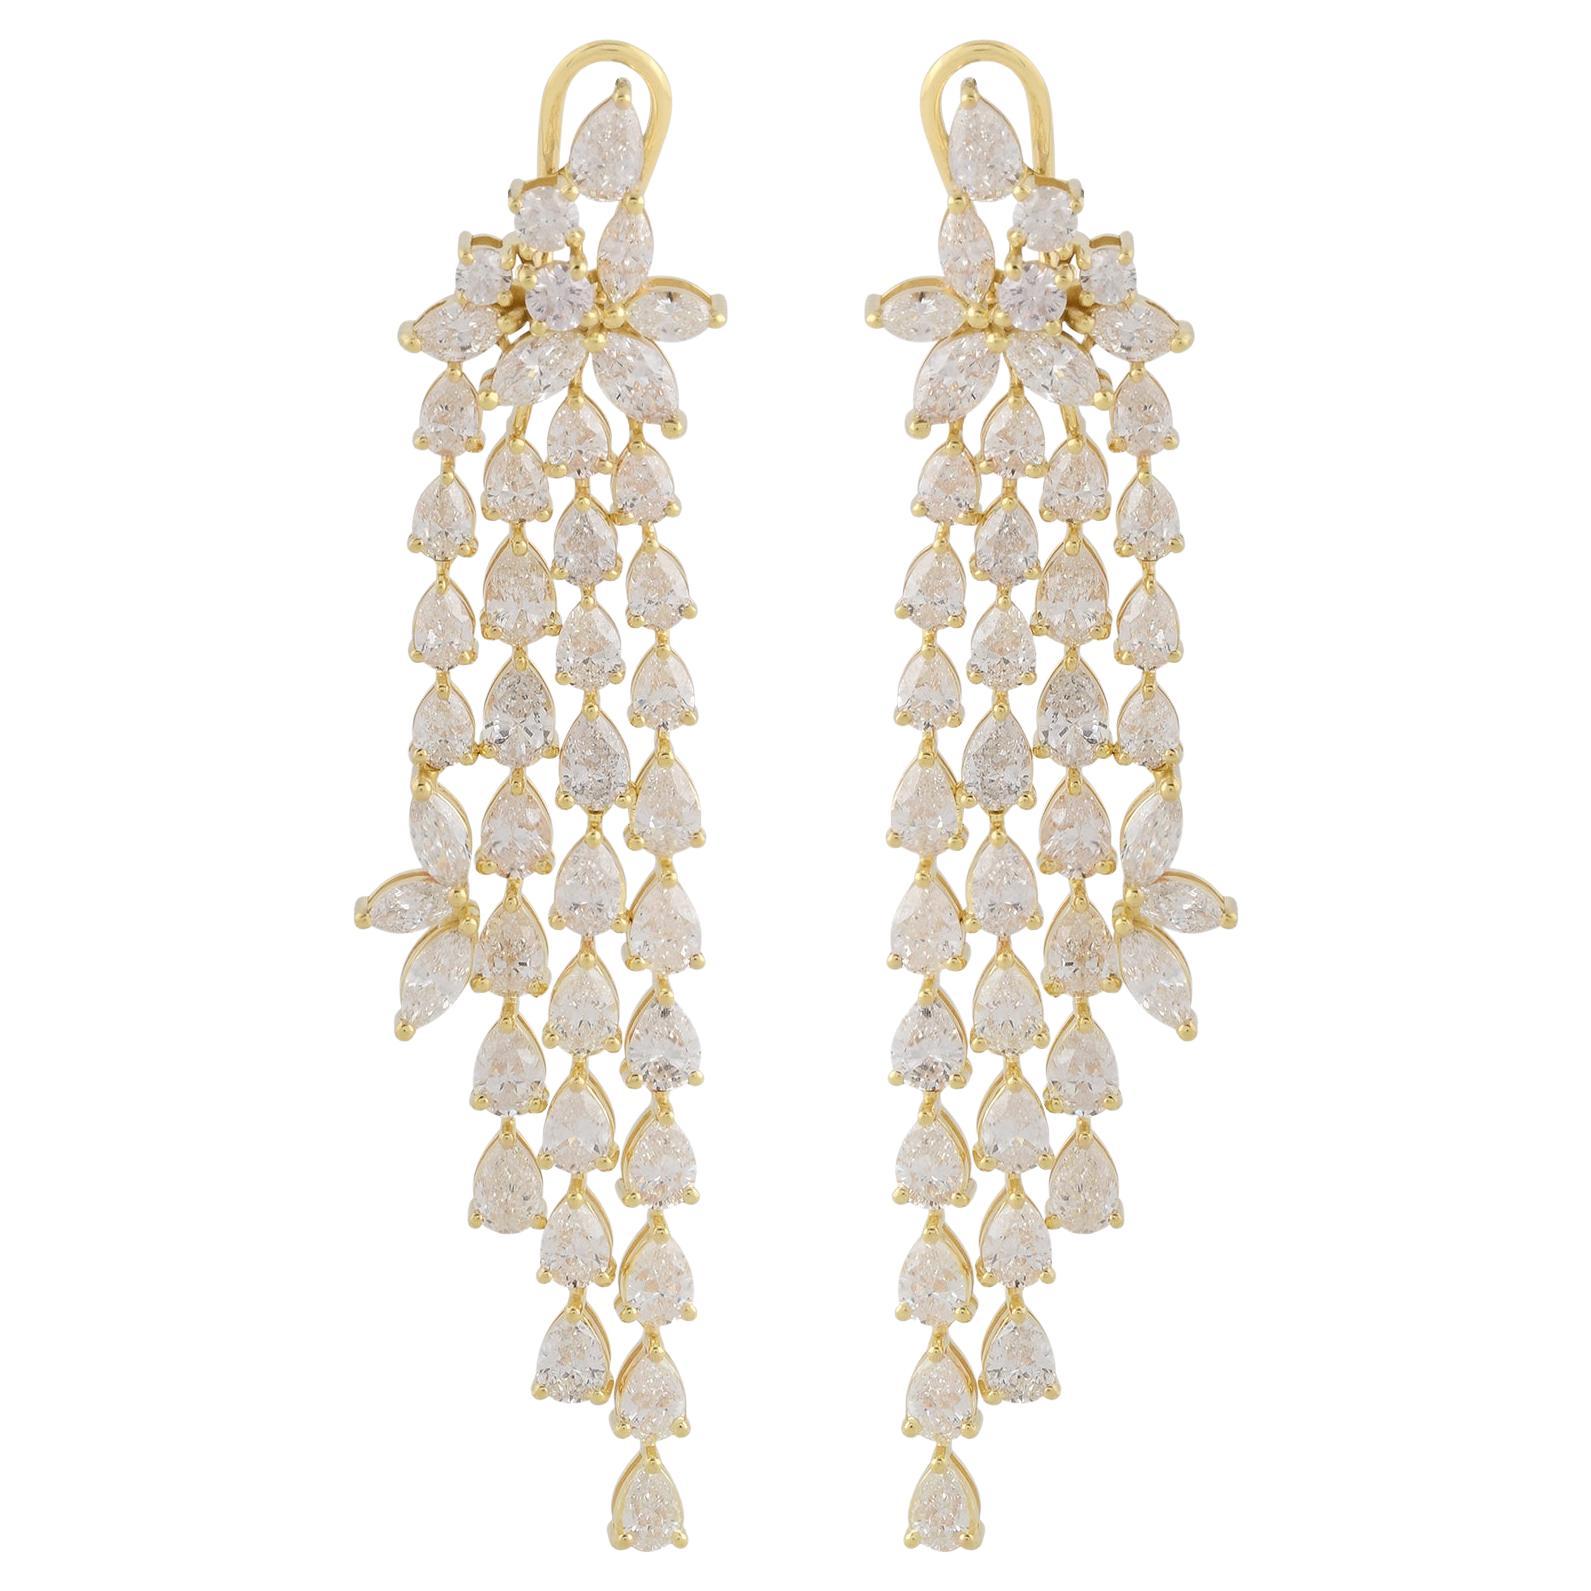 Boucles d'oreilles chandelier en or jaune 18 carats avec diamants en forme de poire, fabrication artisanale